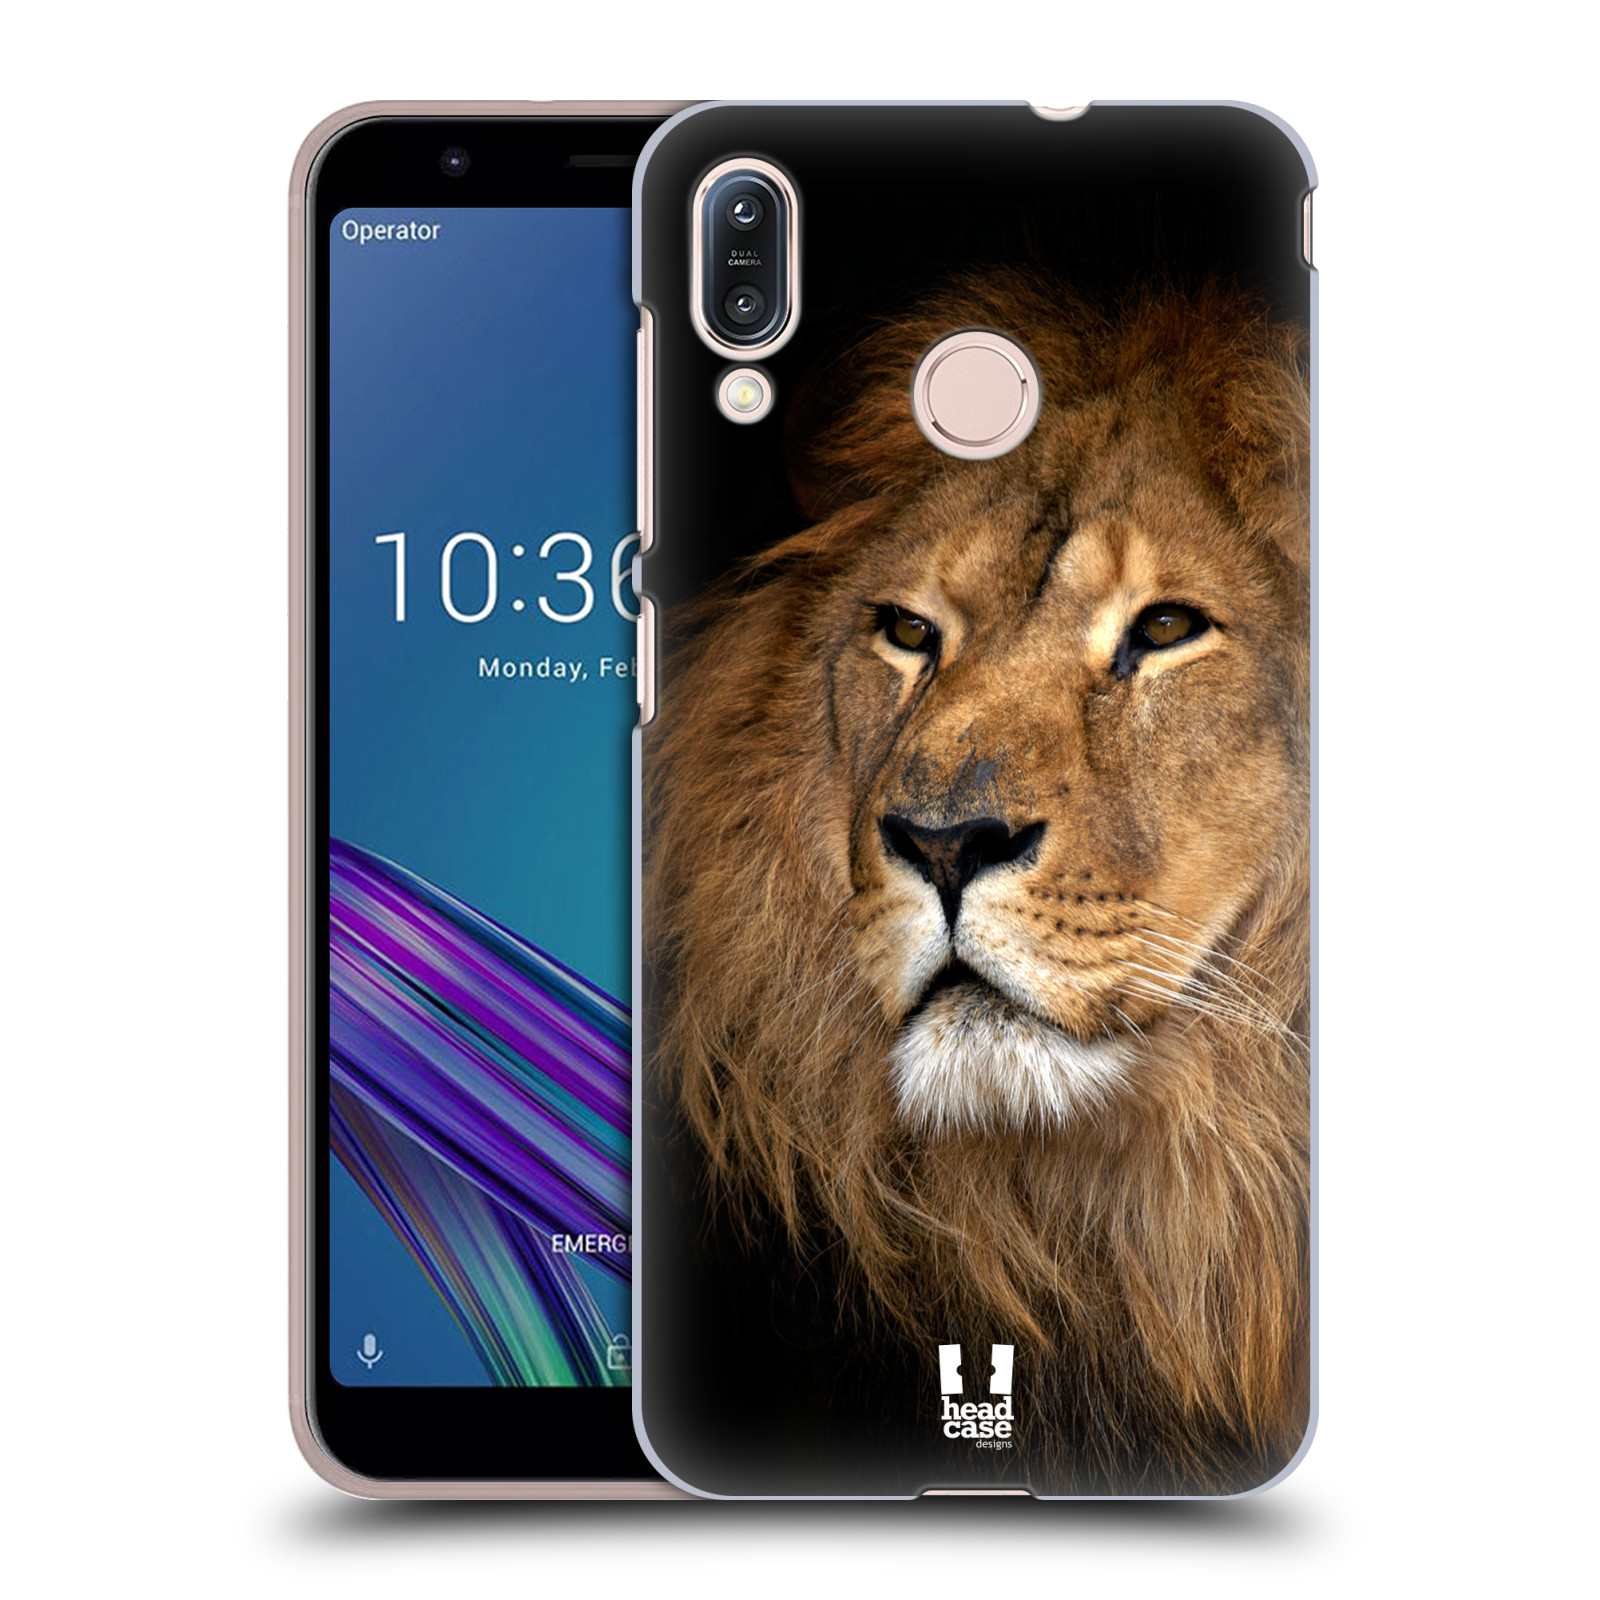 Zadní obal pro mobil Asus Zenfone Max (M1) ZB555KL - HEAD CASE - Svět zvířat král zvířat Lev